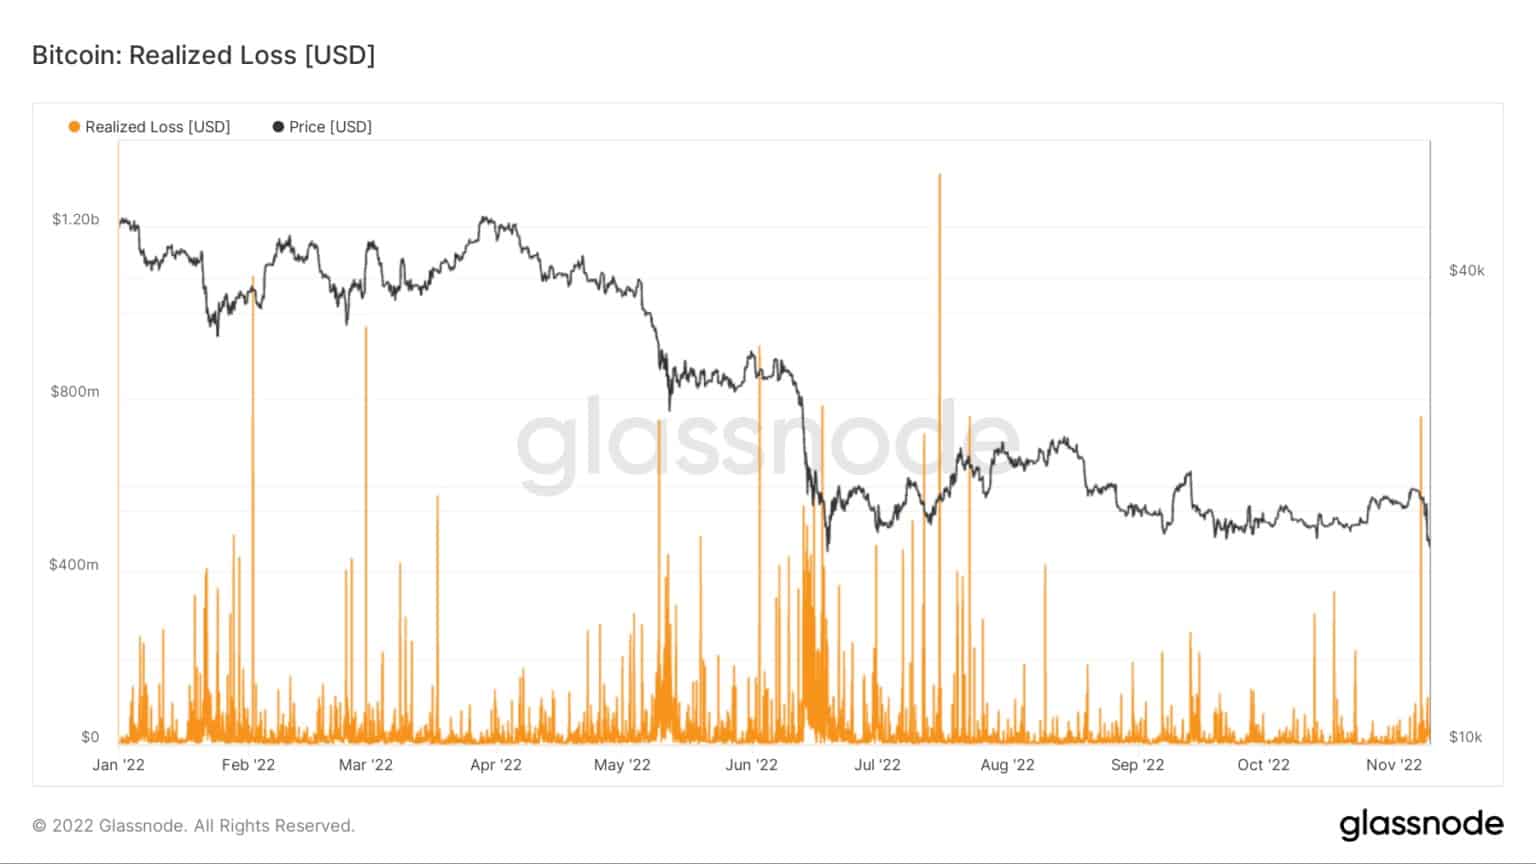 Grafik der realisierten Verluste für Bitcoin im Jahr 2022 (Quelle: Glassnode)